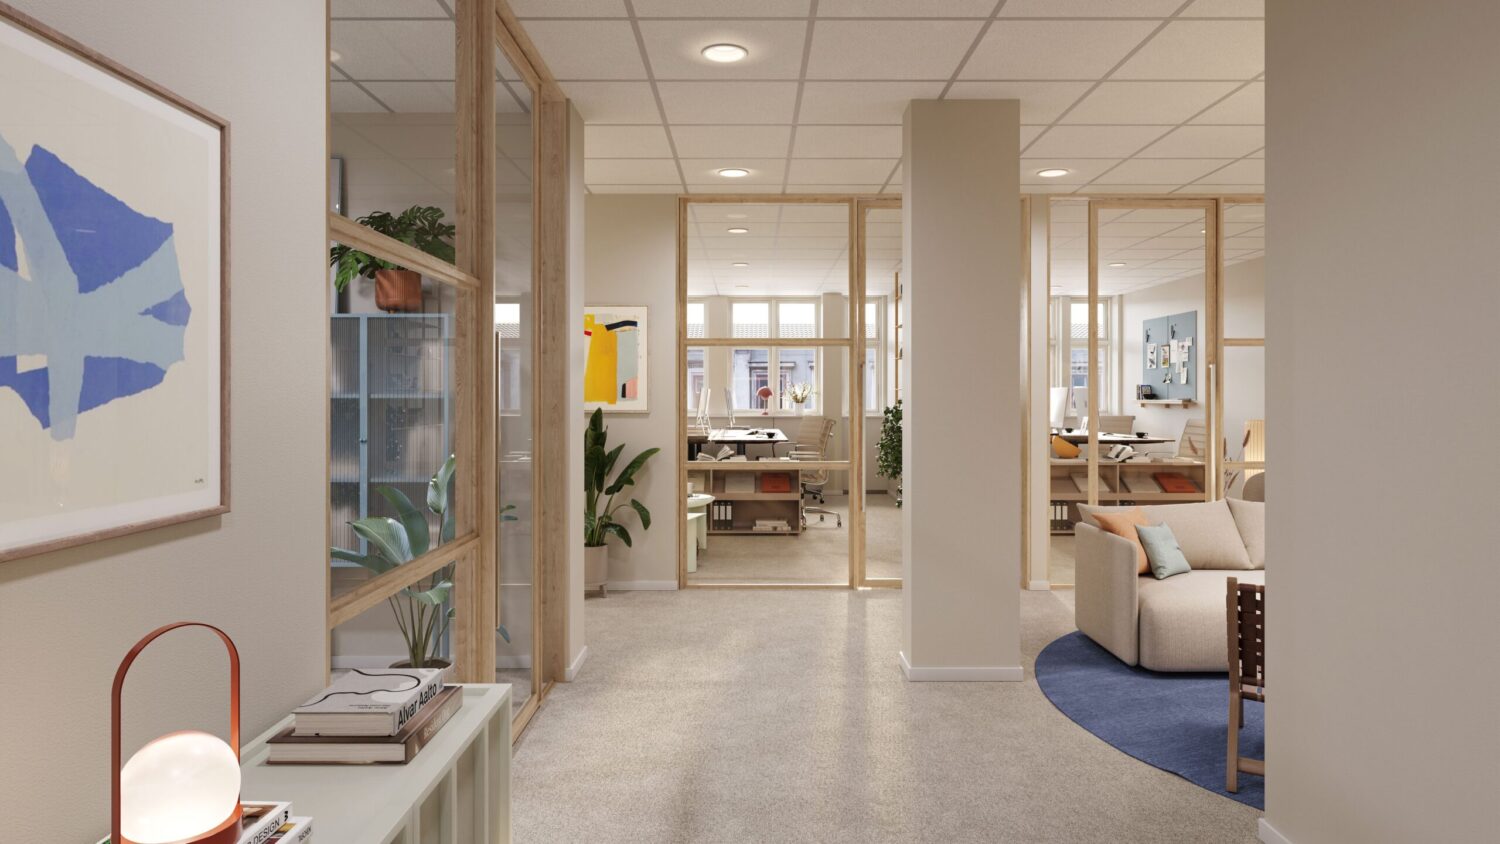 Visionsskiss över kontorslokaler på Drottninggatan 35 med flera egna rum och gemensam loundeyta.